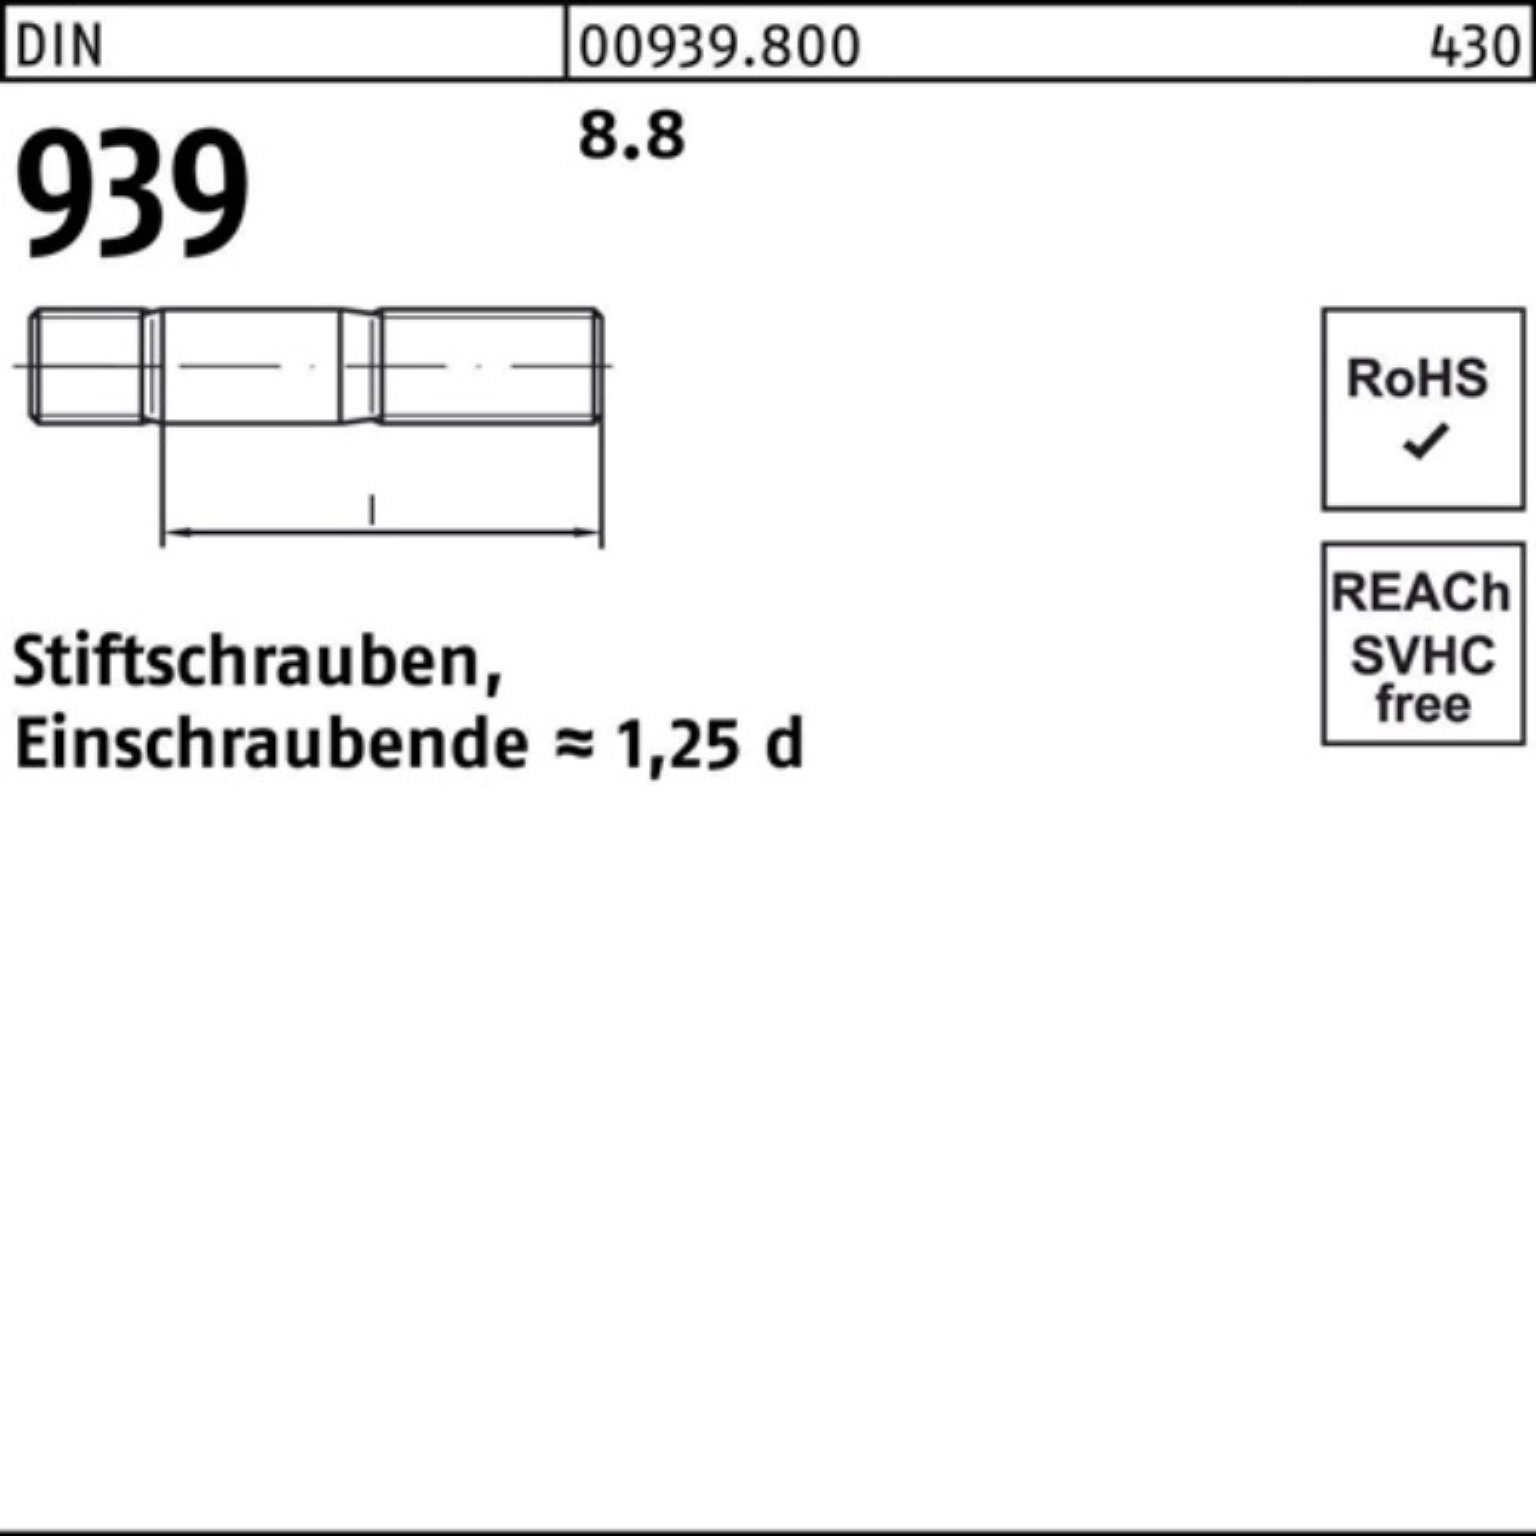 Stiftschraube Reyher DIN Pack 939 M10x 30 S 100er 50 8.8 Einschraubende=1,25d Stiftschraube